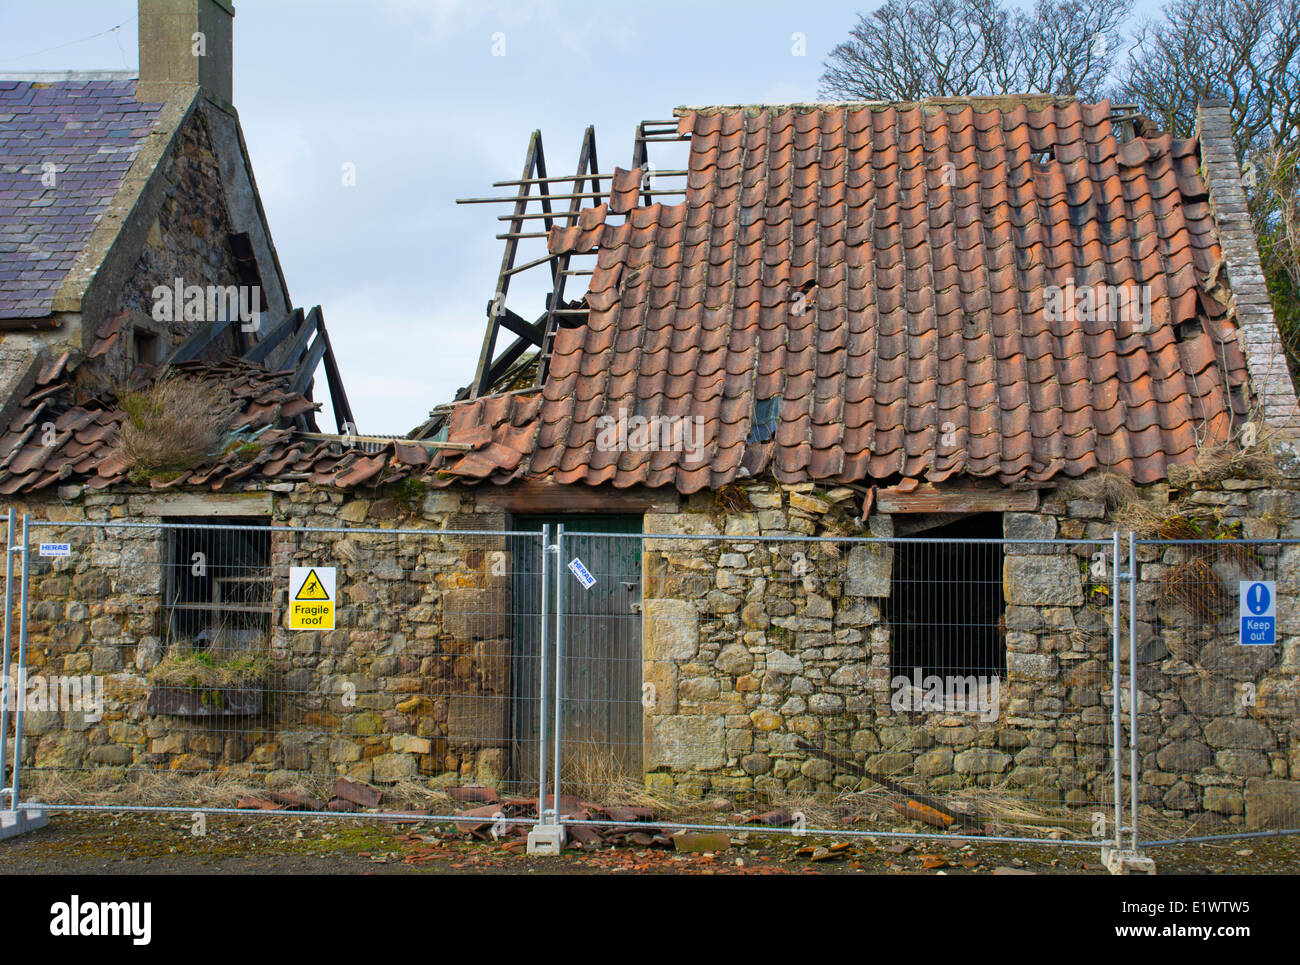 Abandoned, derelict, dangerous farm building Stock Photo